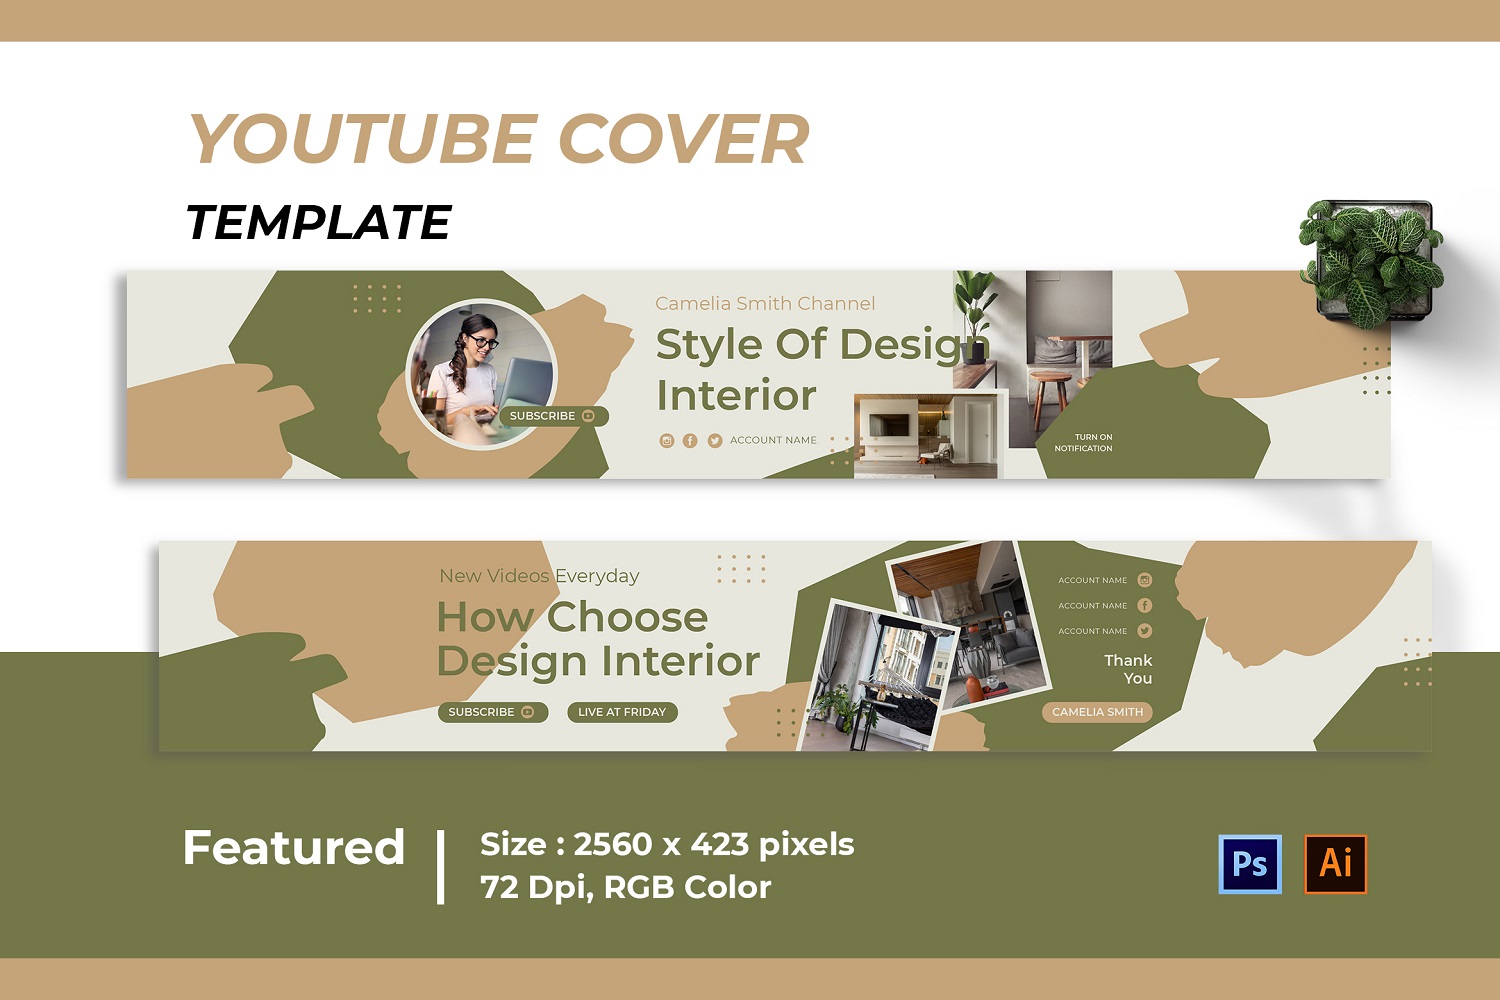 Design Interior Youtube Cover